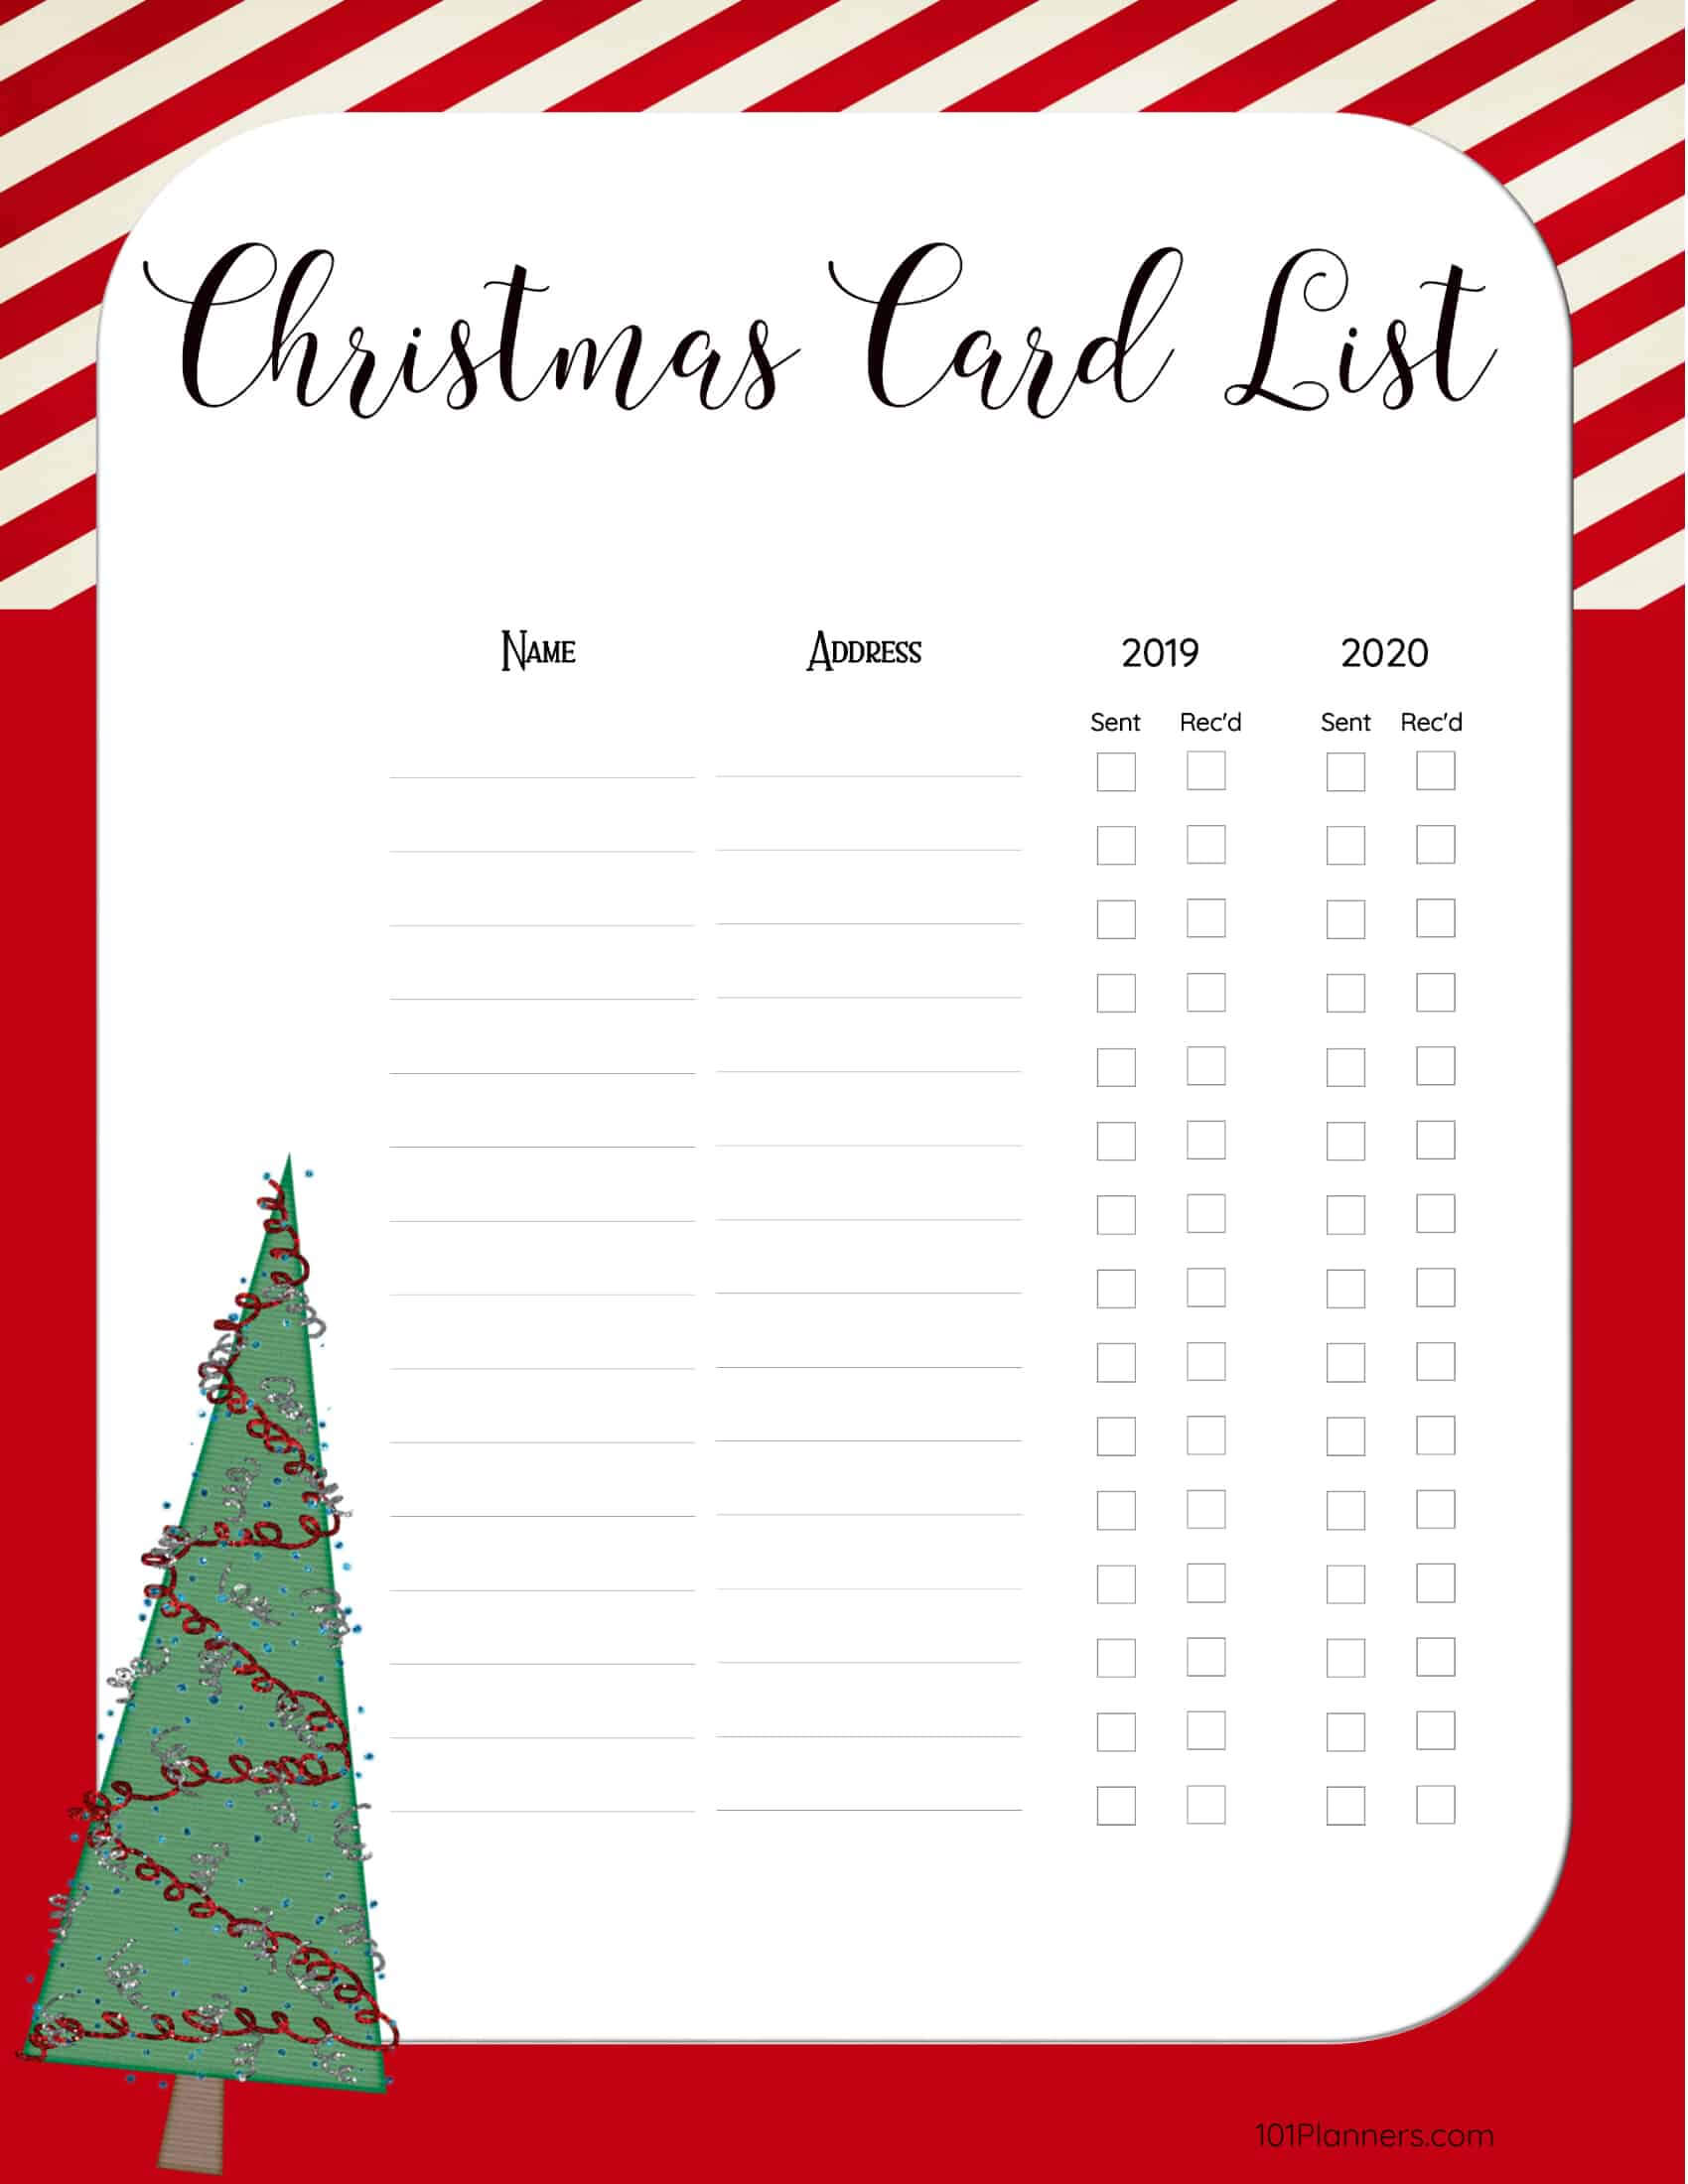 free-printable-christmas-gift-list-template-regarding-christmas-card-list-template